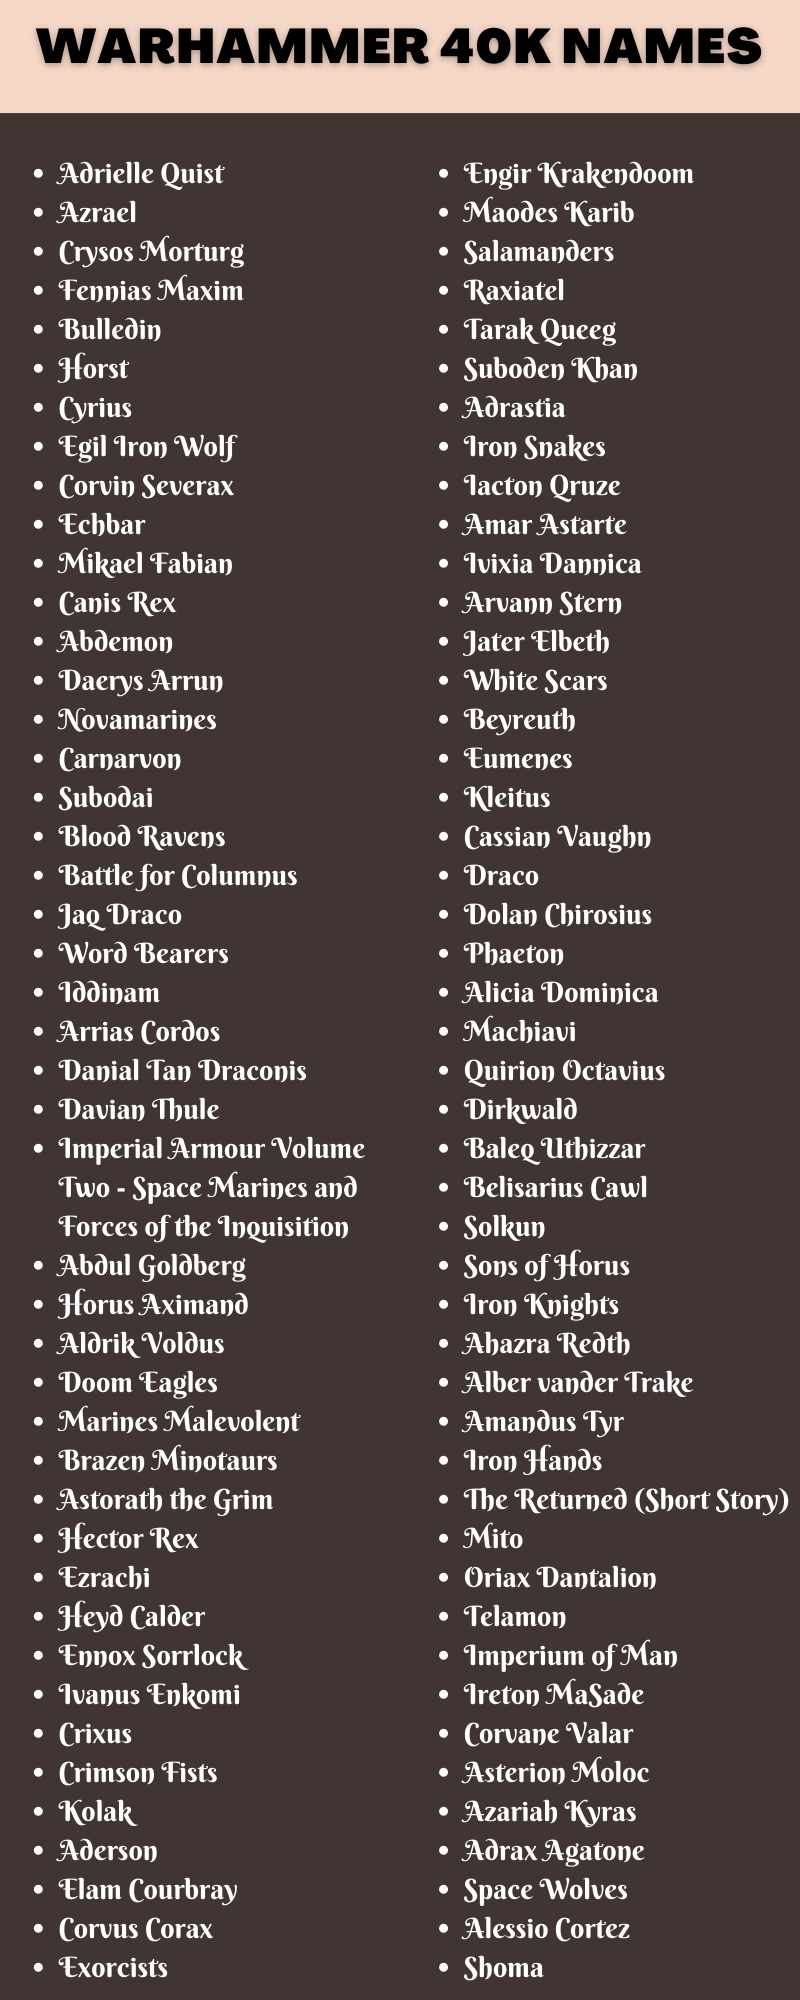 Warhammer 40k Names